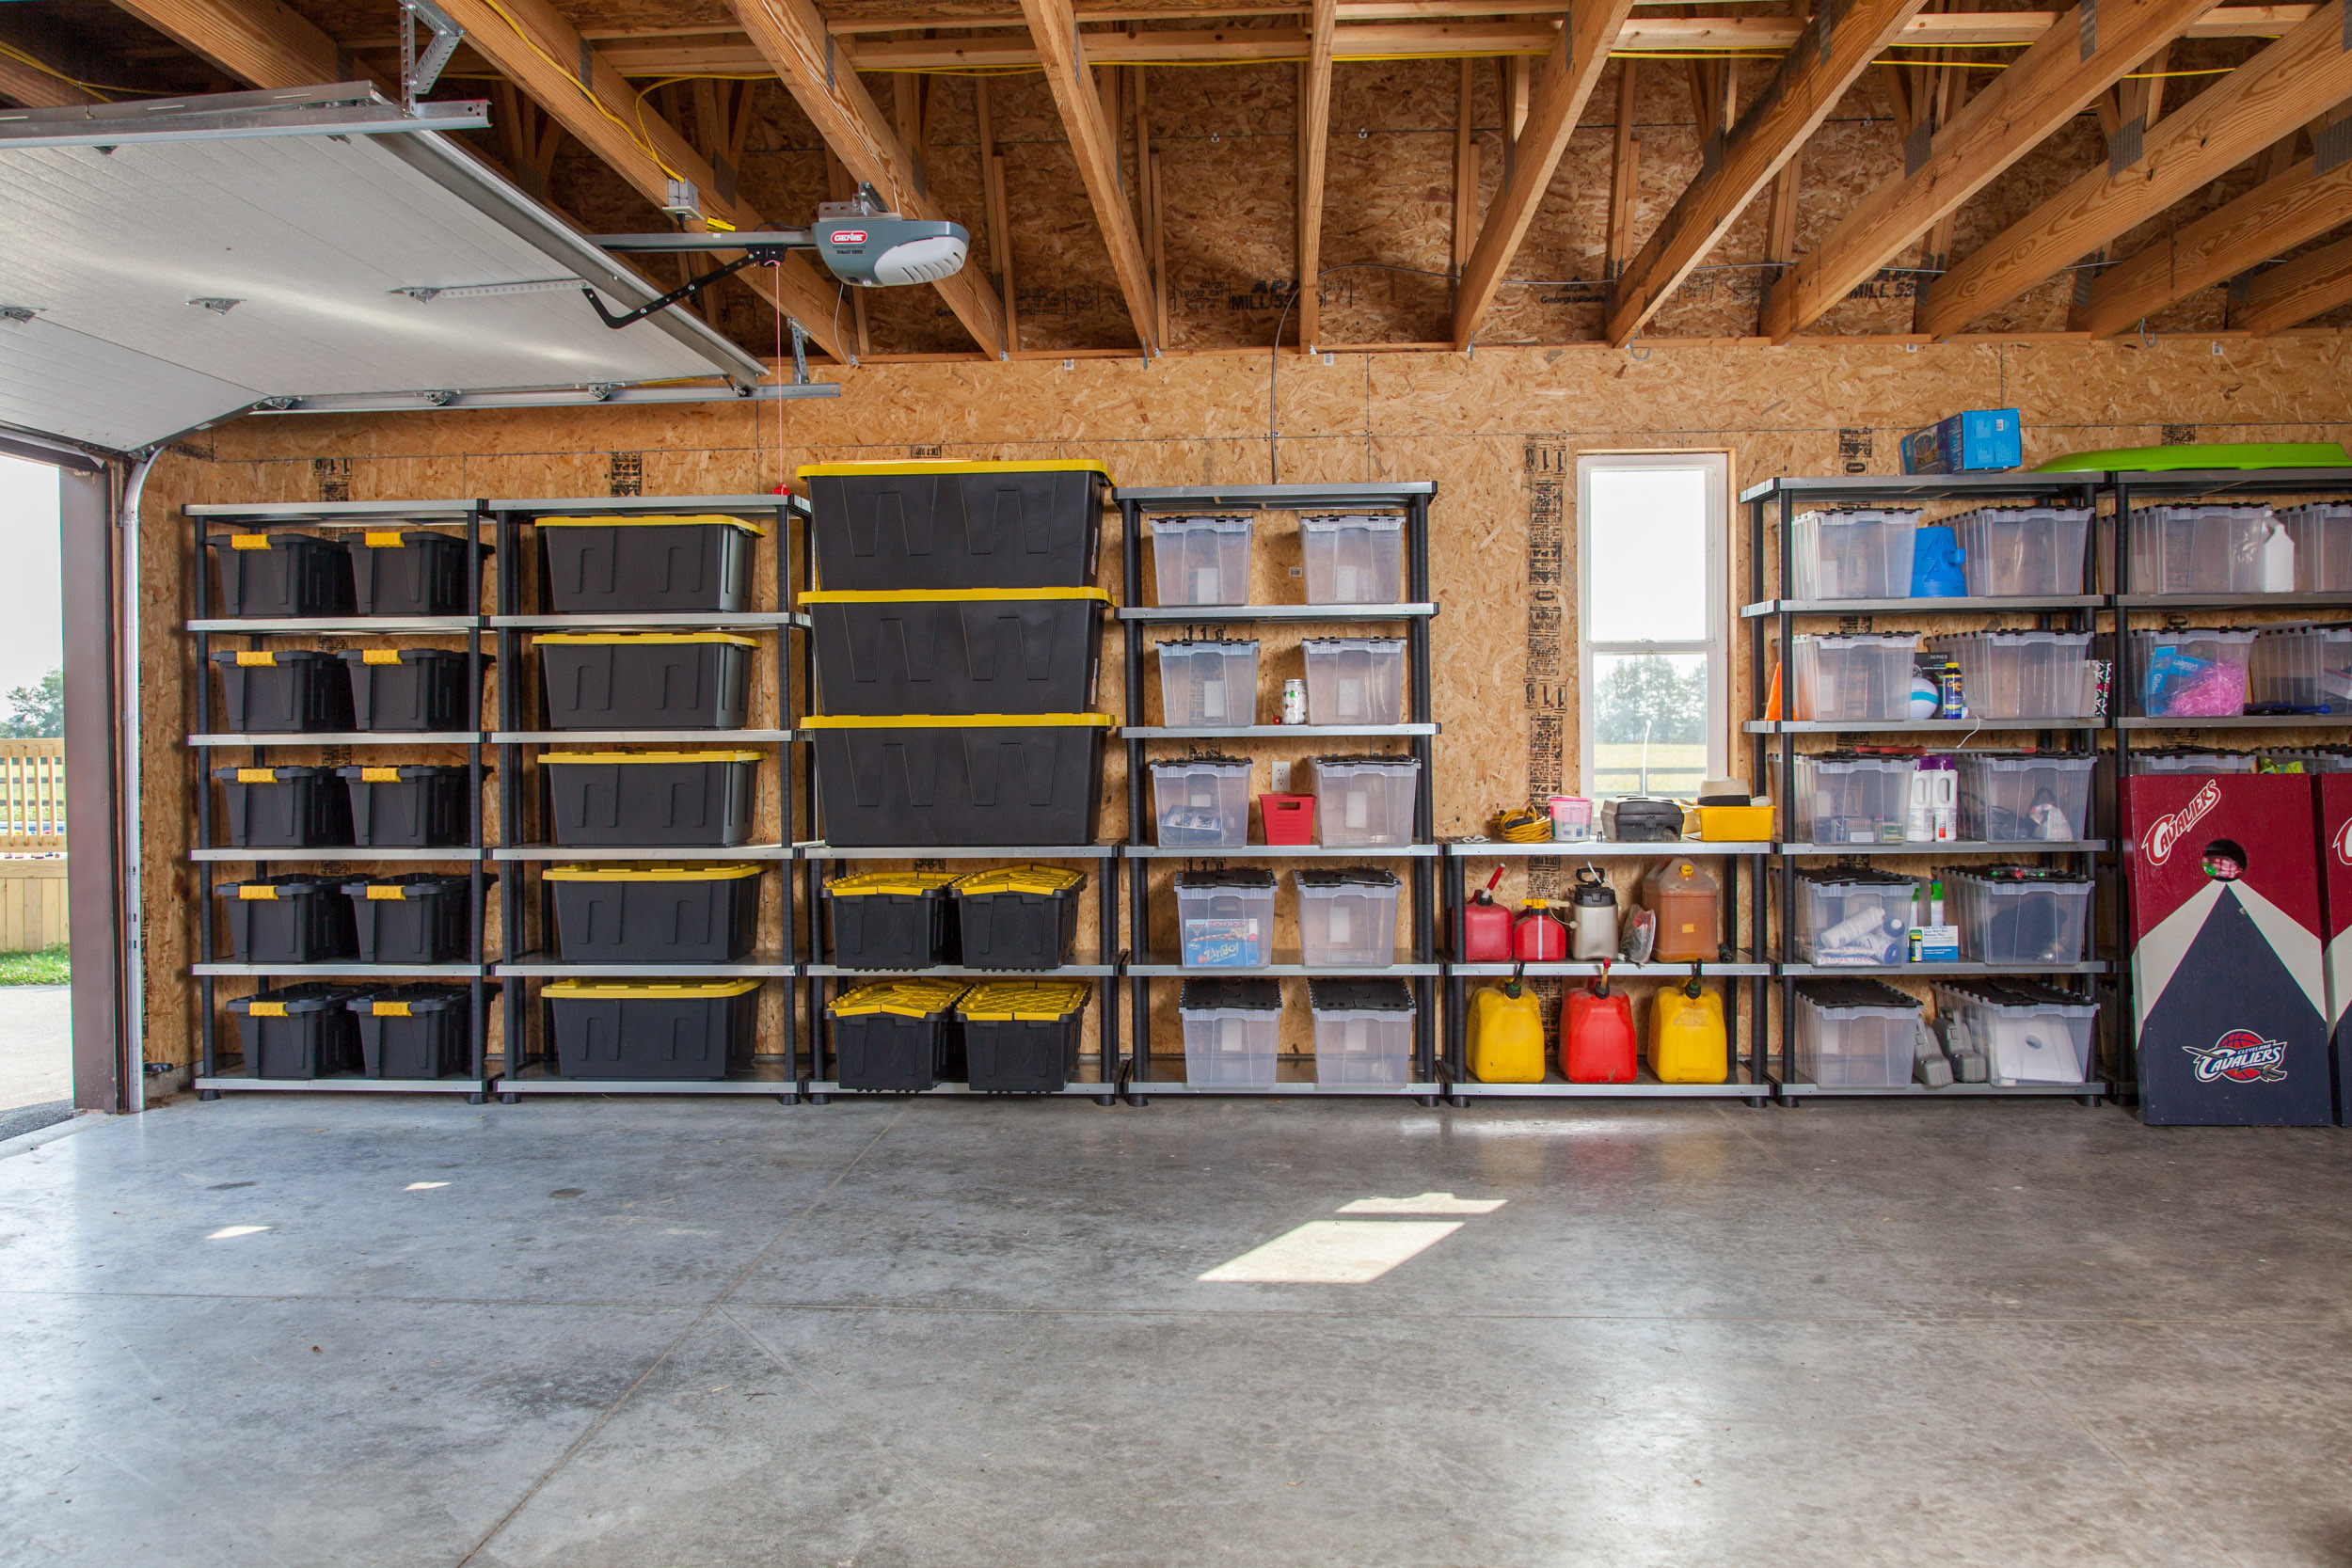 Best ideas about Storage Ideas For Garage
. Save or Pin Best Garage Organization Ideas Now.